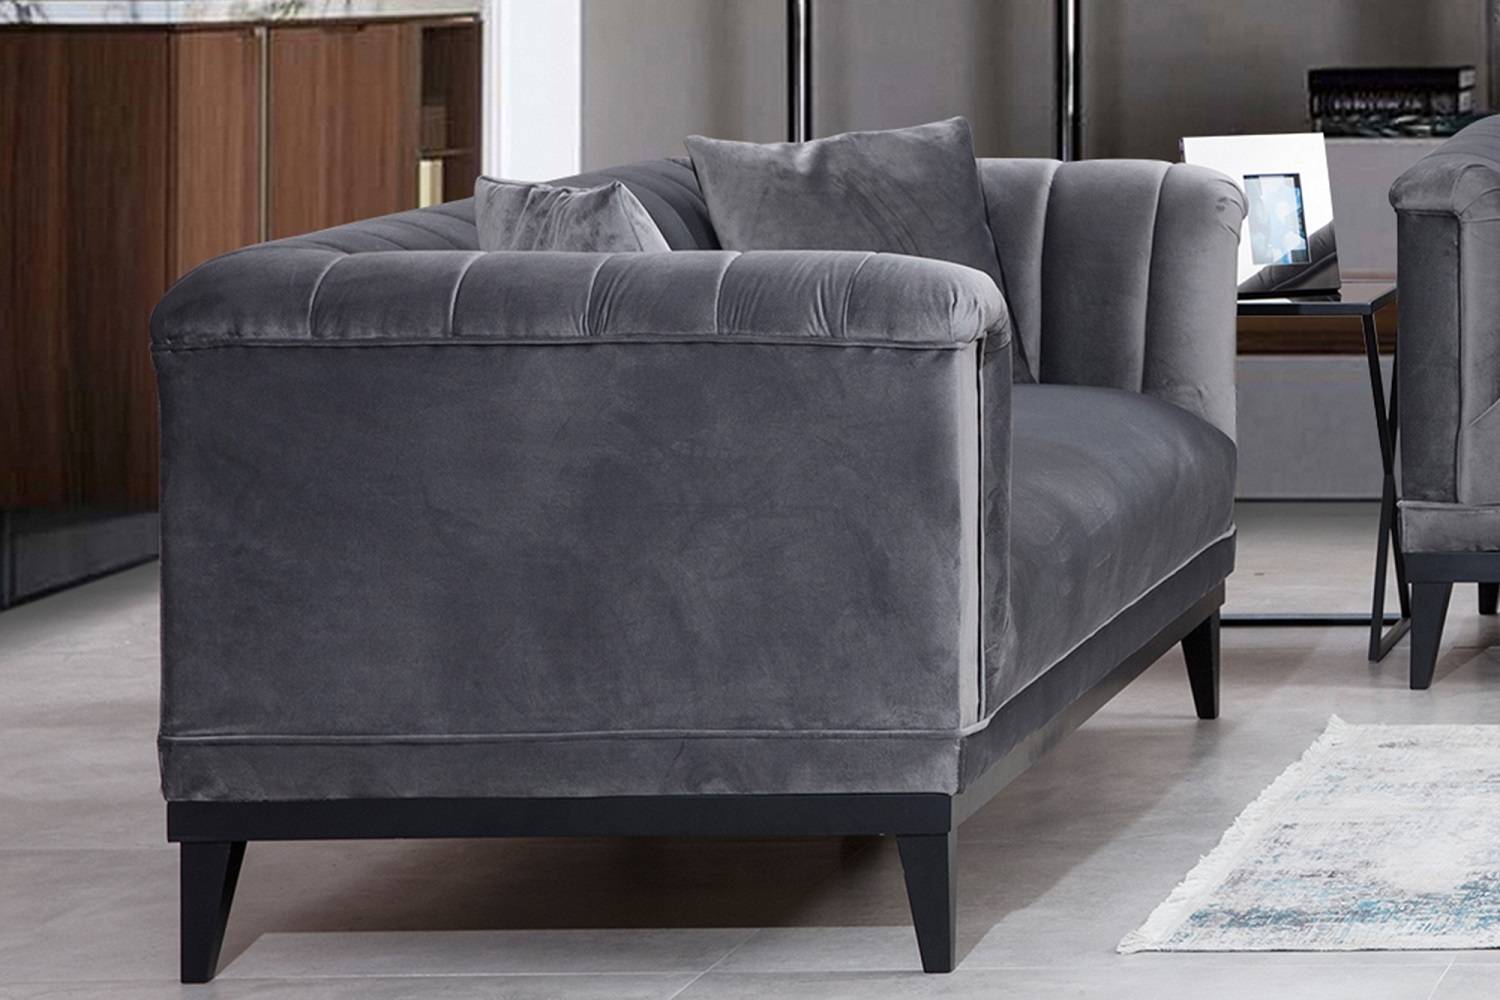 Sofahouse Designová sedačka Tamanna 190 cm tmavě šedá